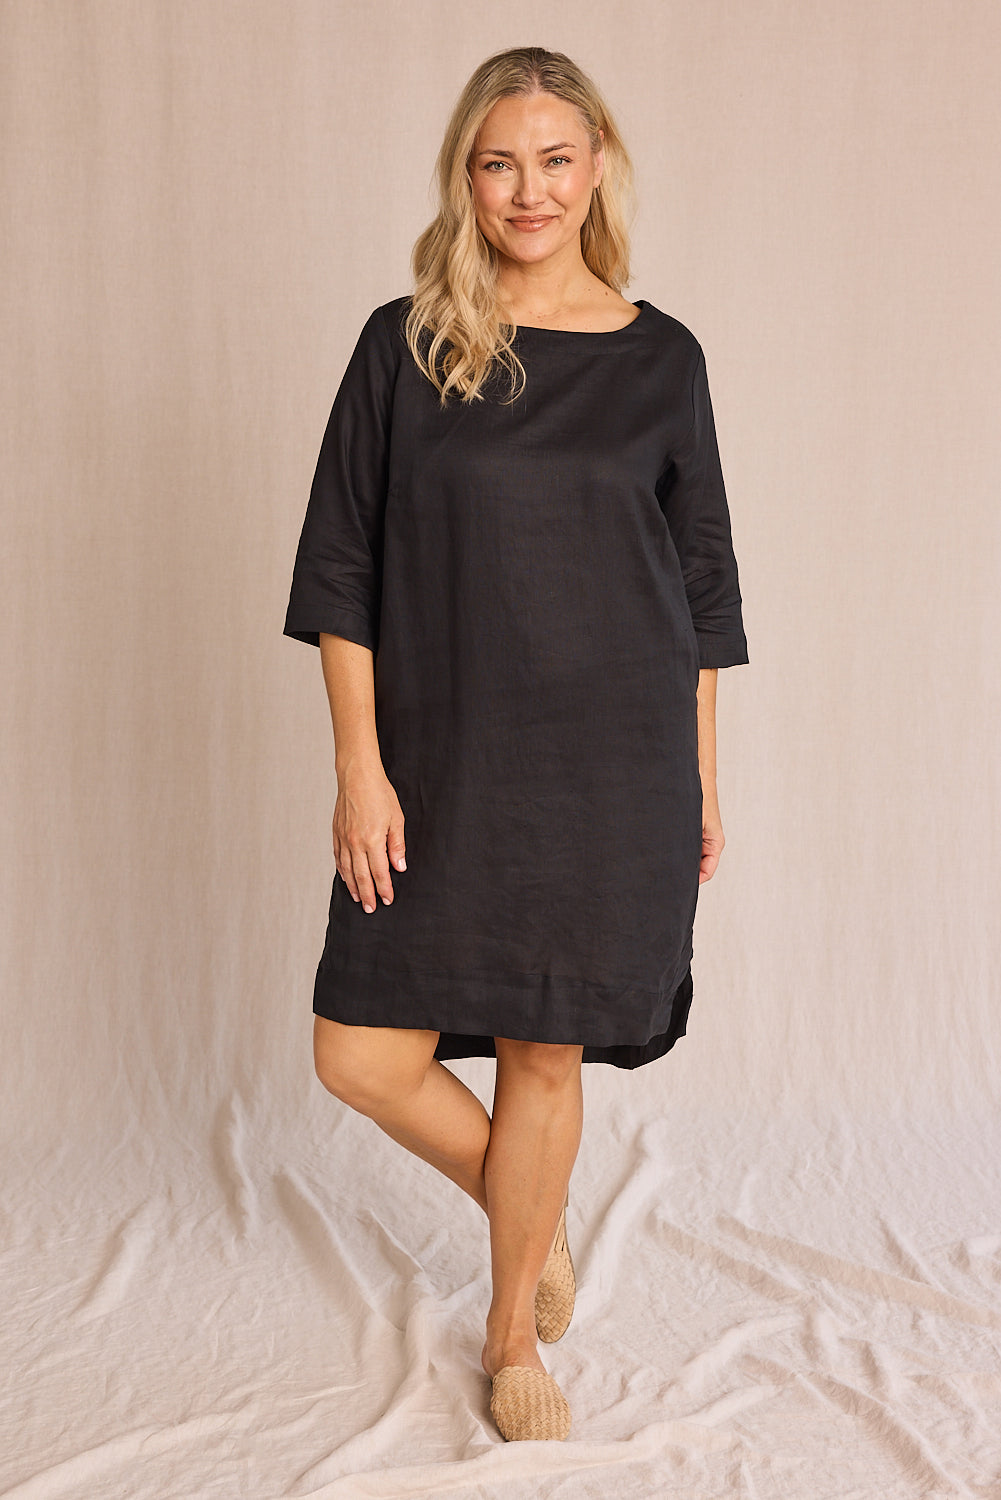 Adrift Women's Boatneck Shift Dress in Black - 100% Linen – Adrift Clothing